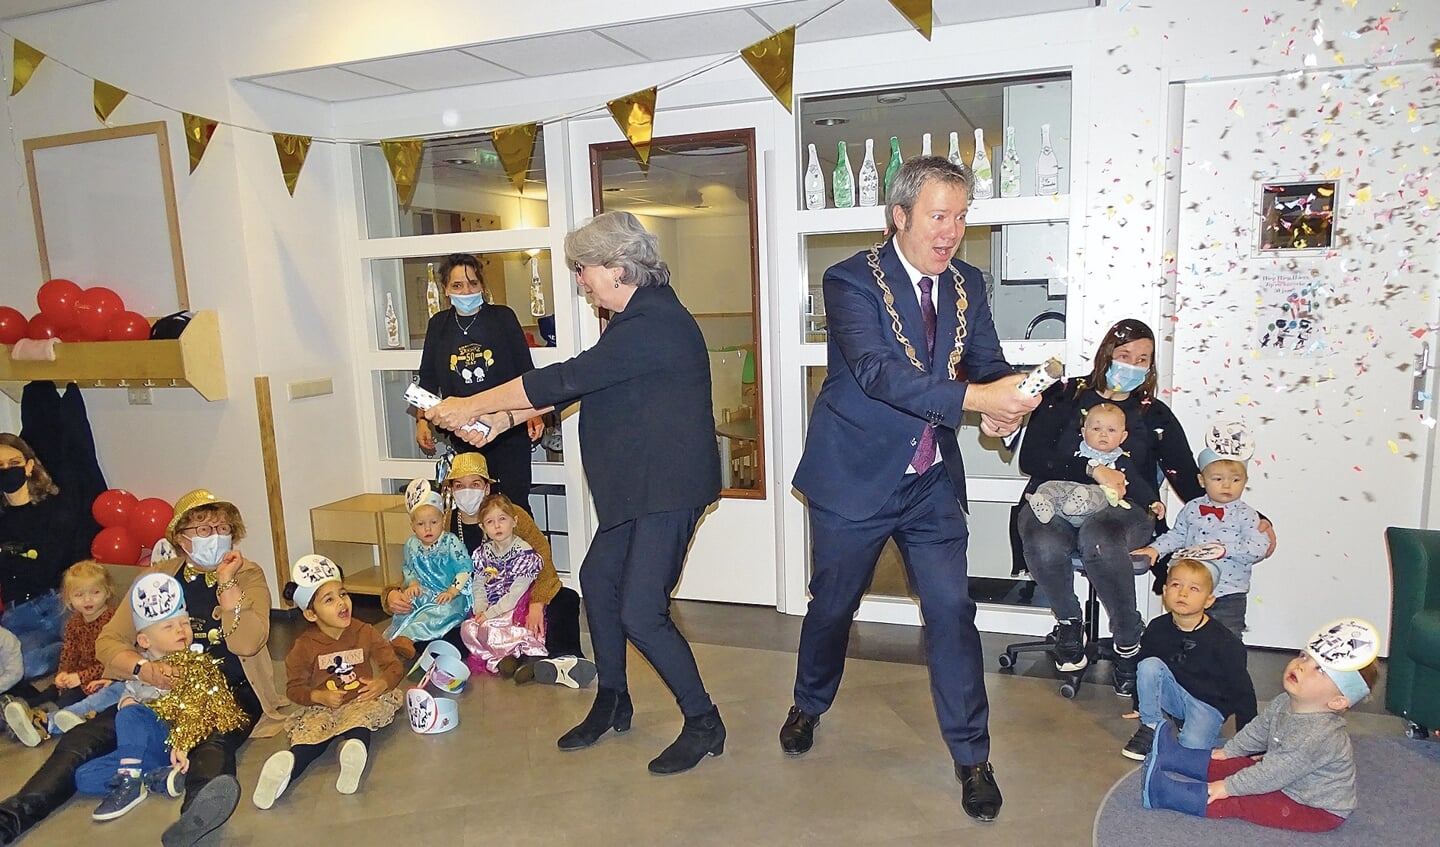 De burgemeester opent het feestjaar samen met Caroline van den Dungen met een confettikanon.